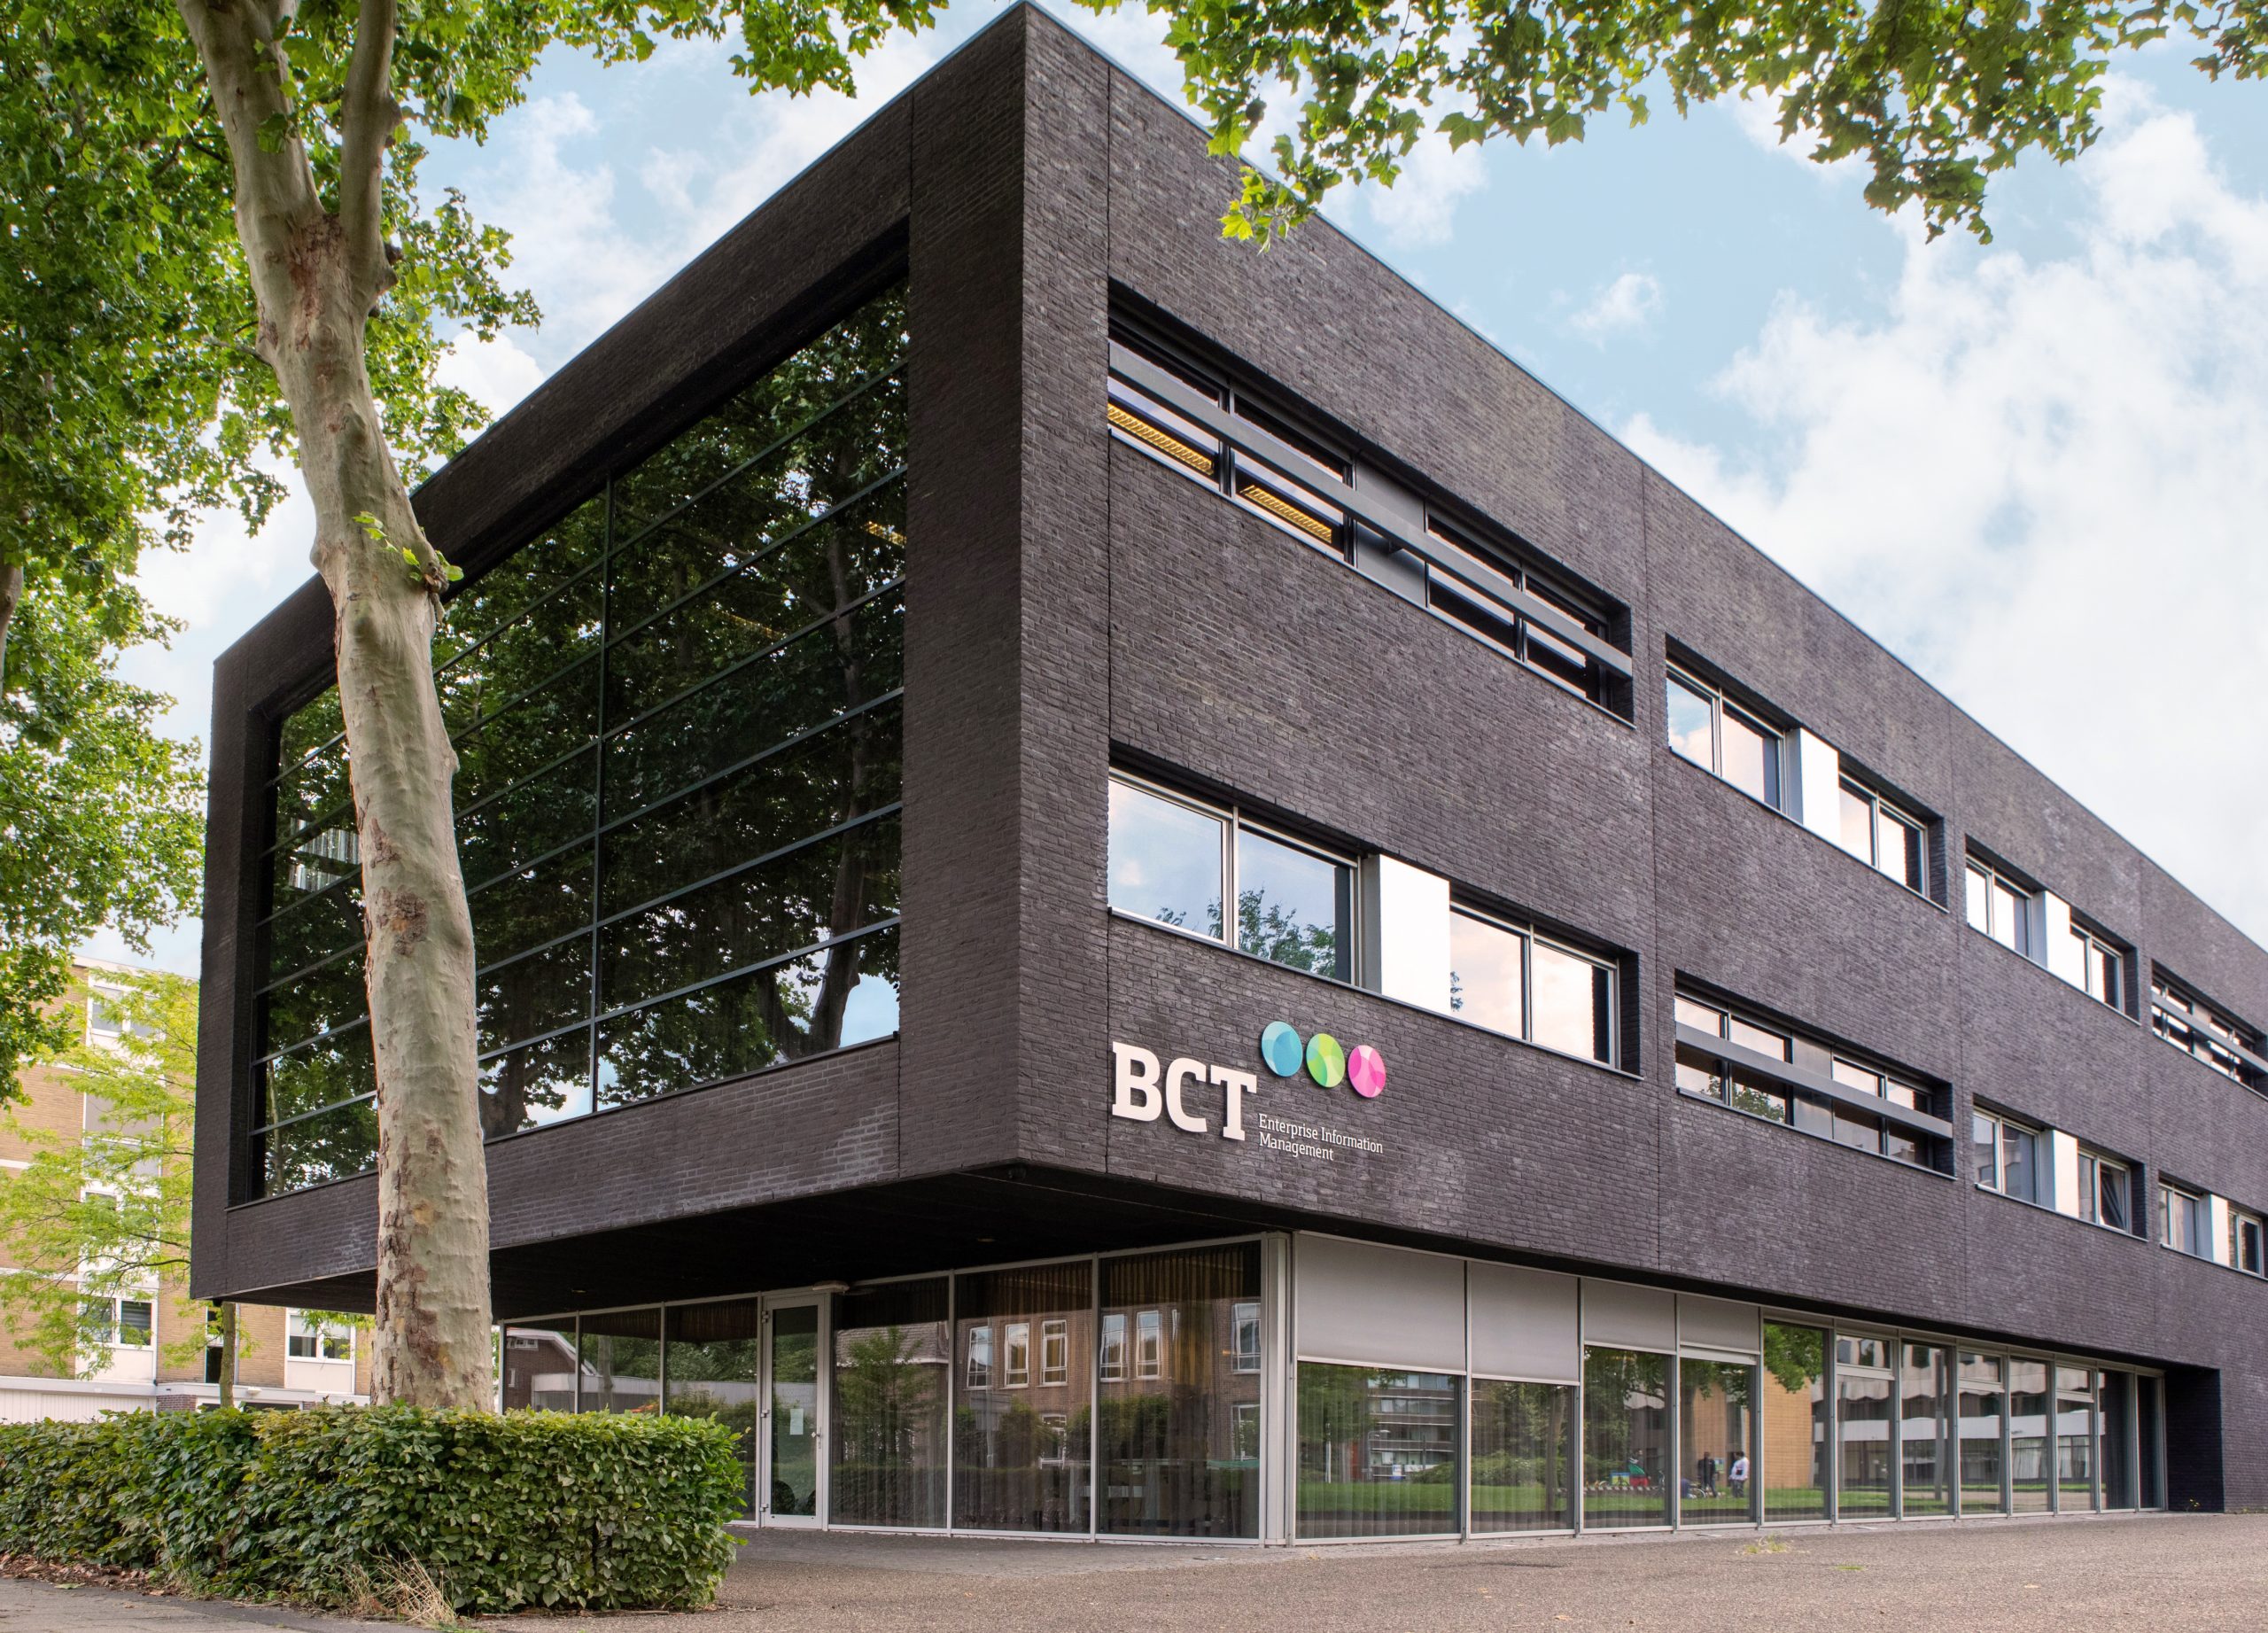 BCT Hauptsitz Sittard - front